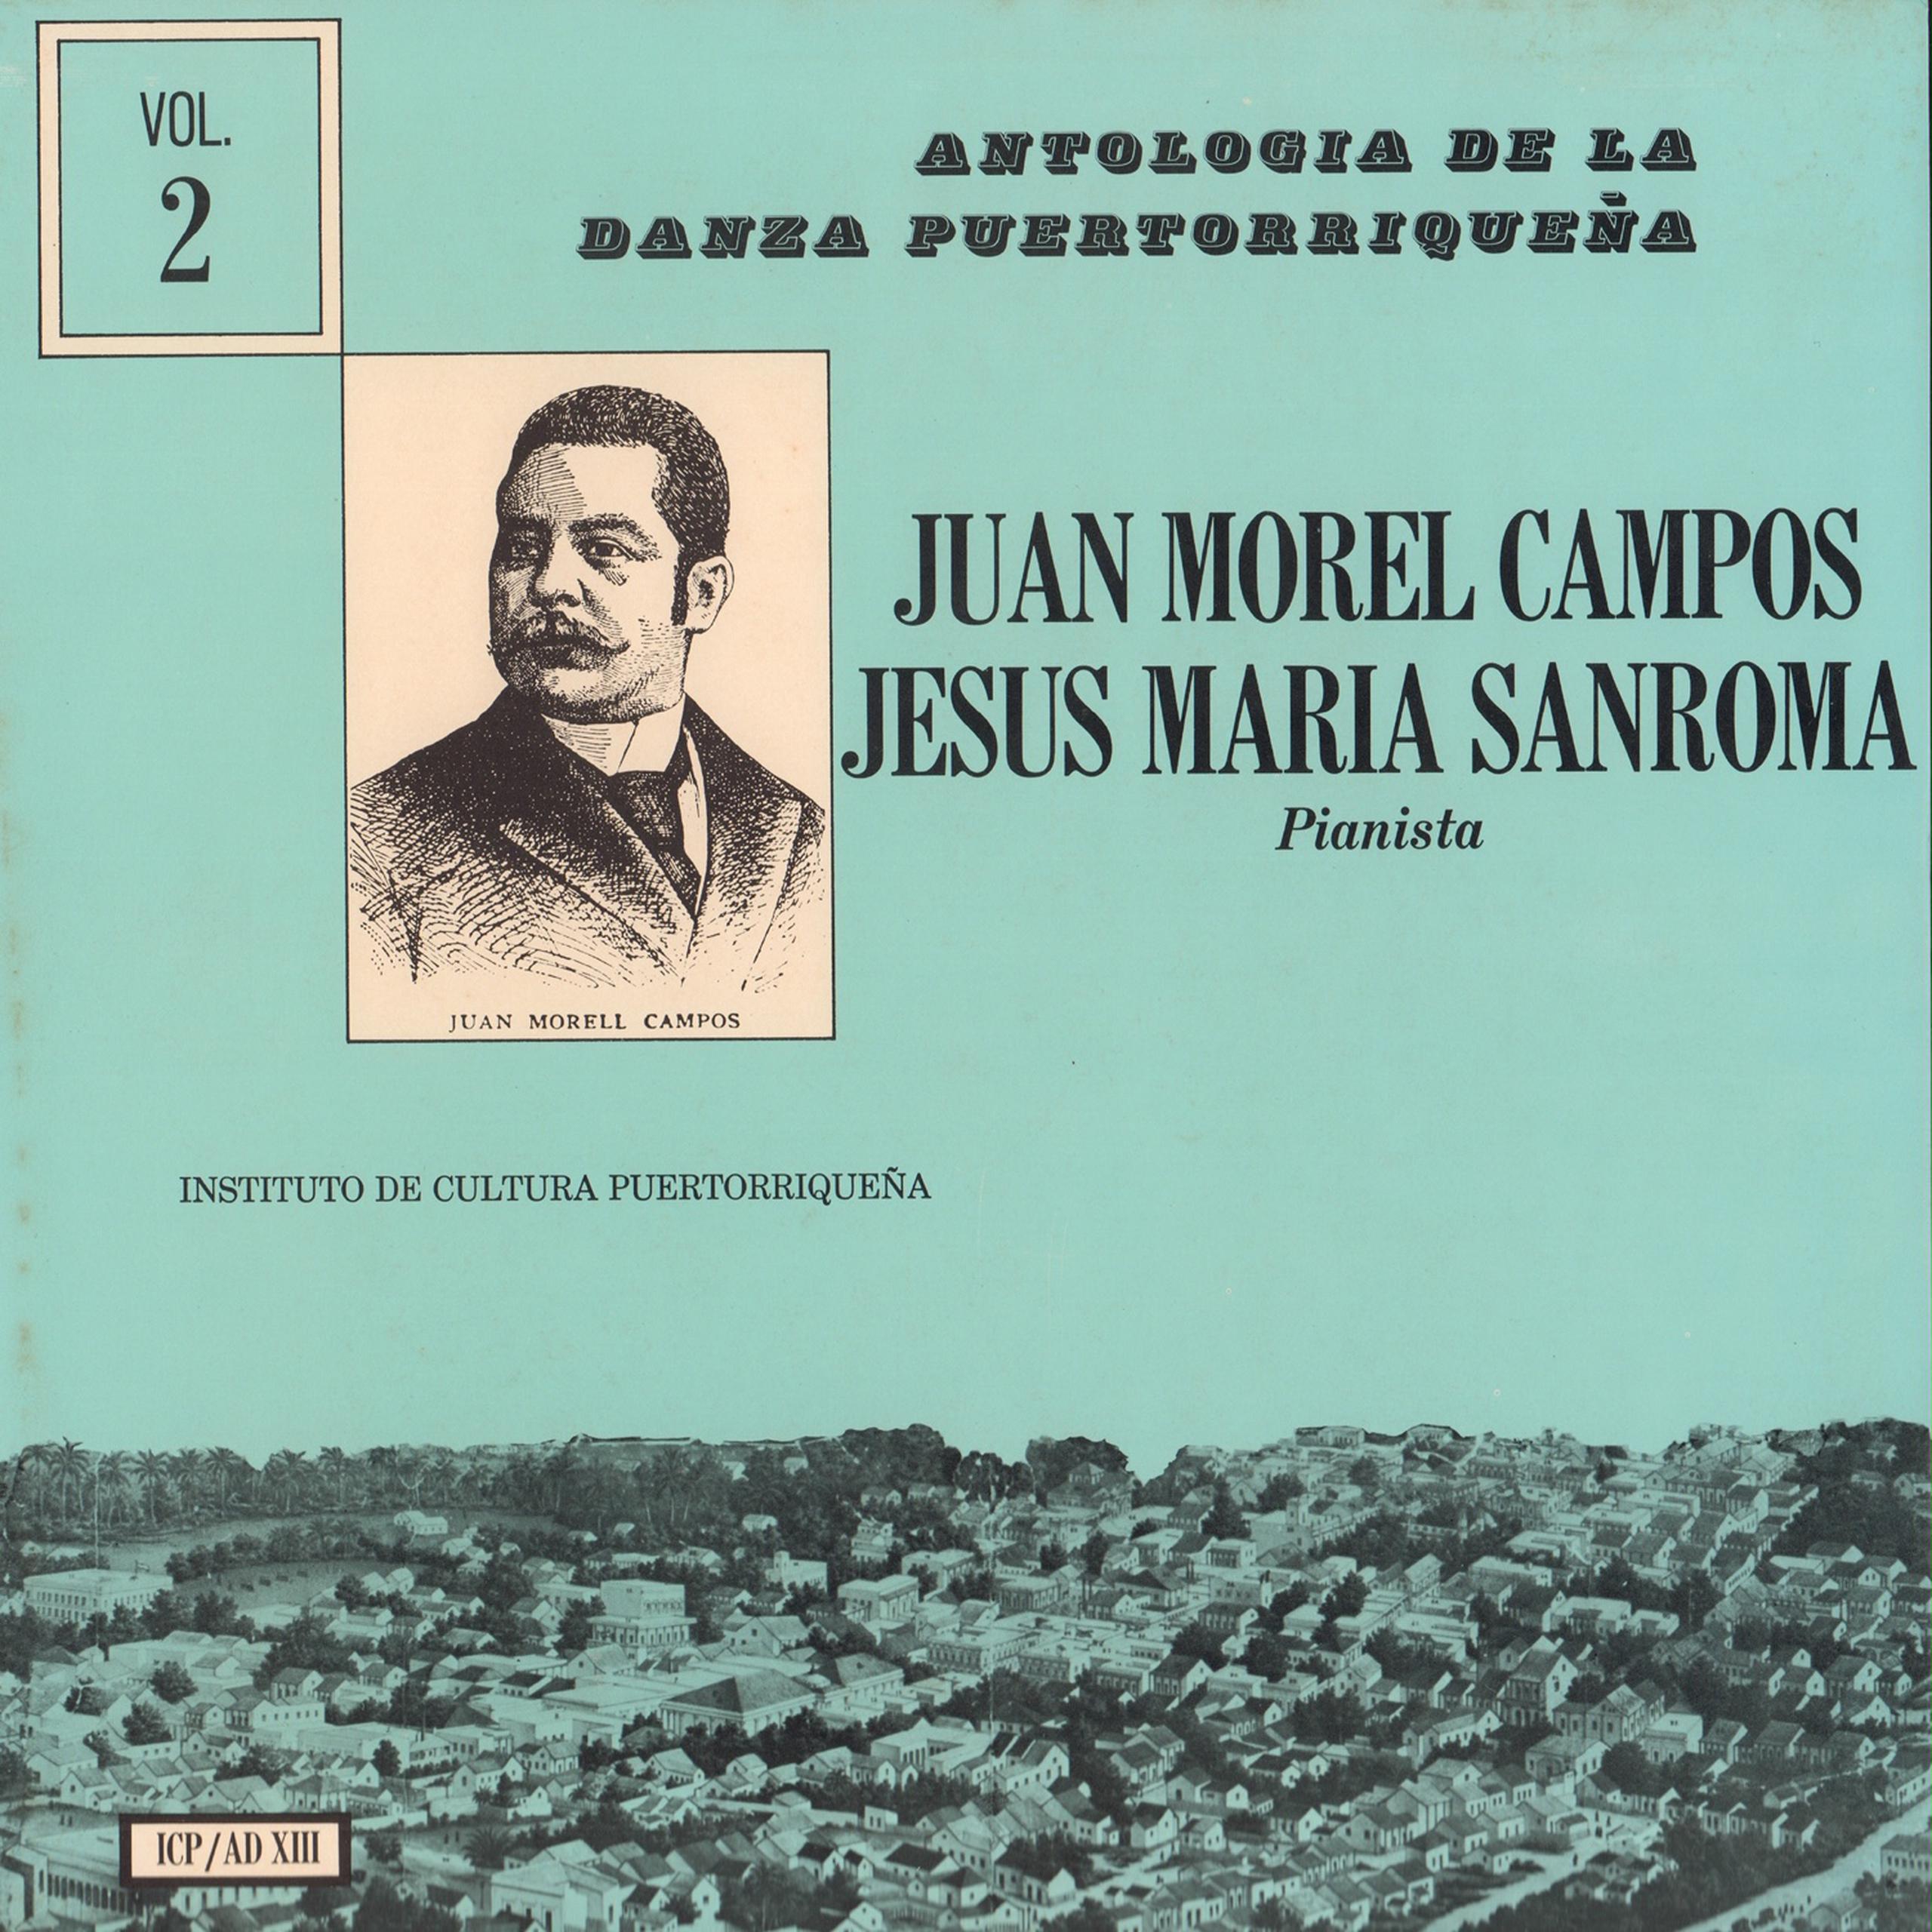 La antología de danzas de Juan Morel Campos es una de las joyas musicales disponibles en línea.